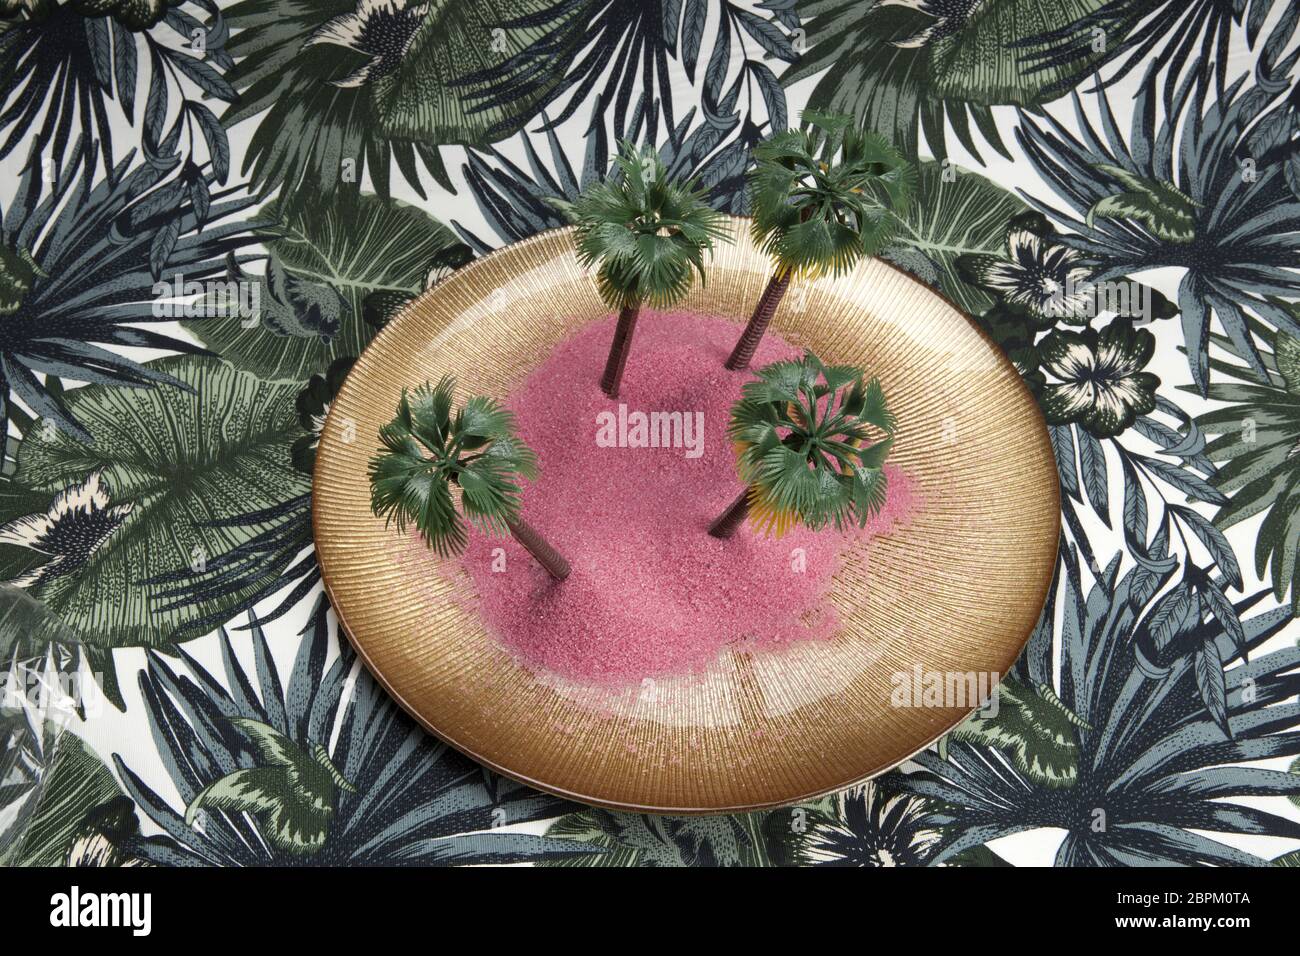 Sabbia rosa e le palme in un piatto dorato su uno sfondo tropicale. Il minimo di still life fotografia a colori., Foto Stock